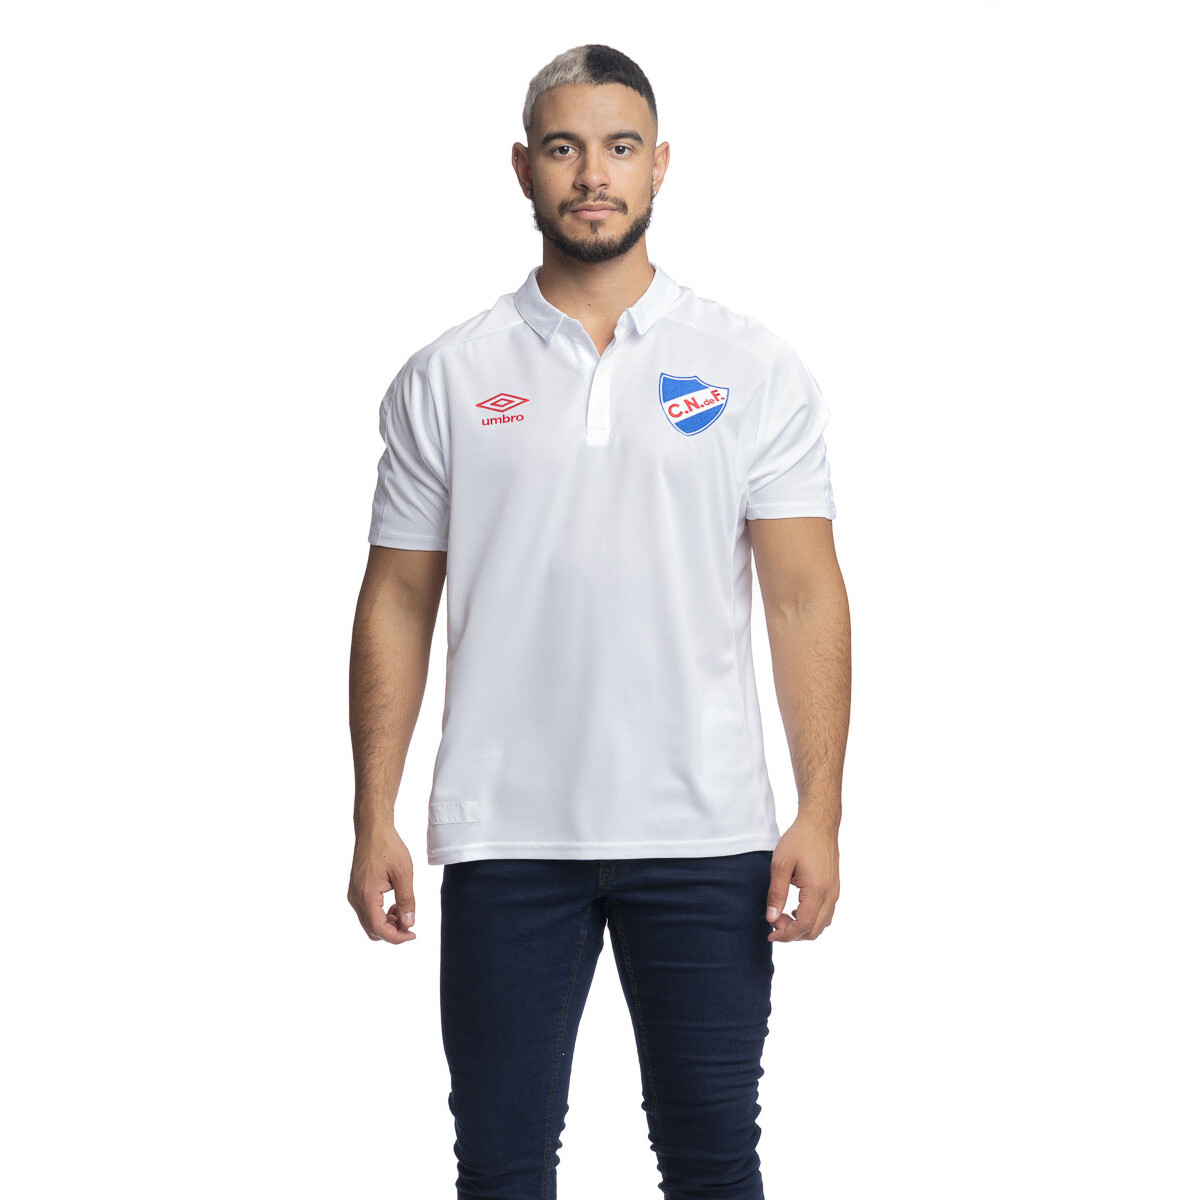 Camiseta Oficial 2017 Umbro Nacional Hombre - 0v4 